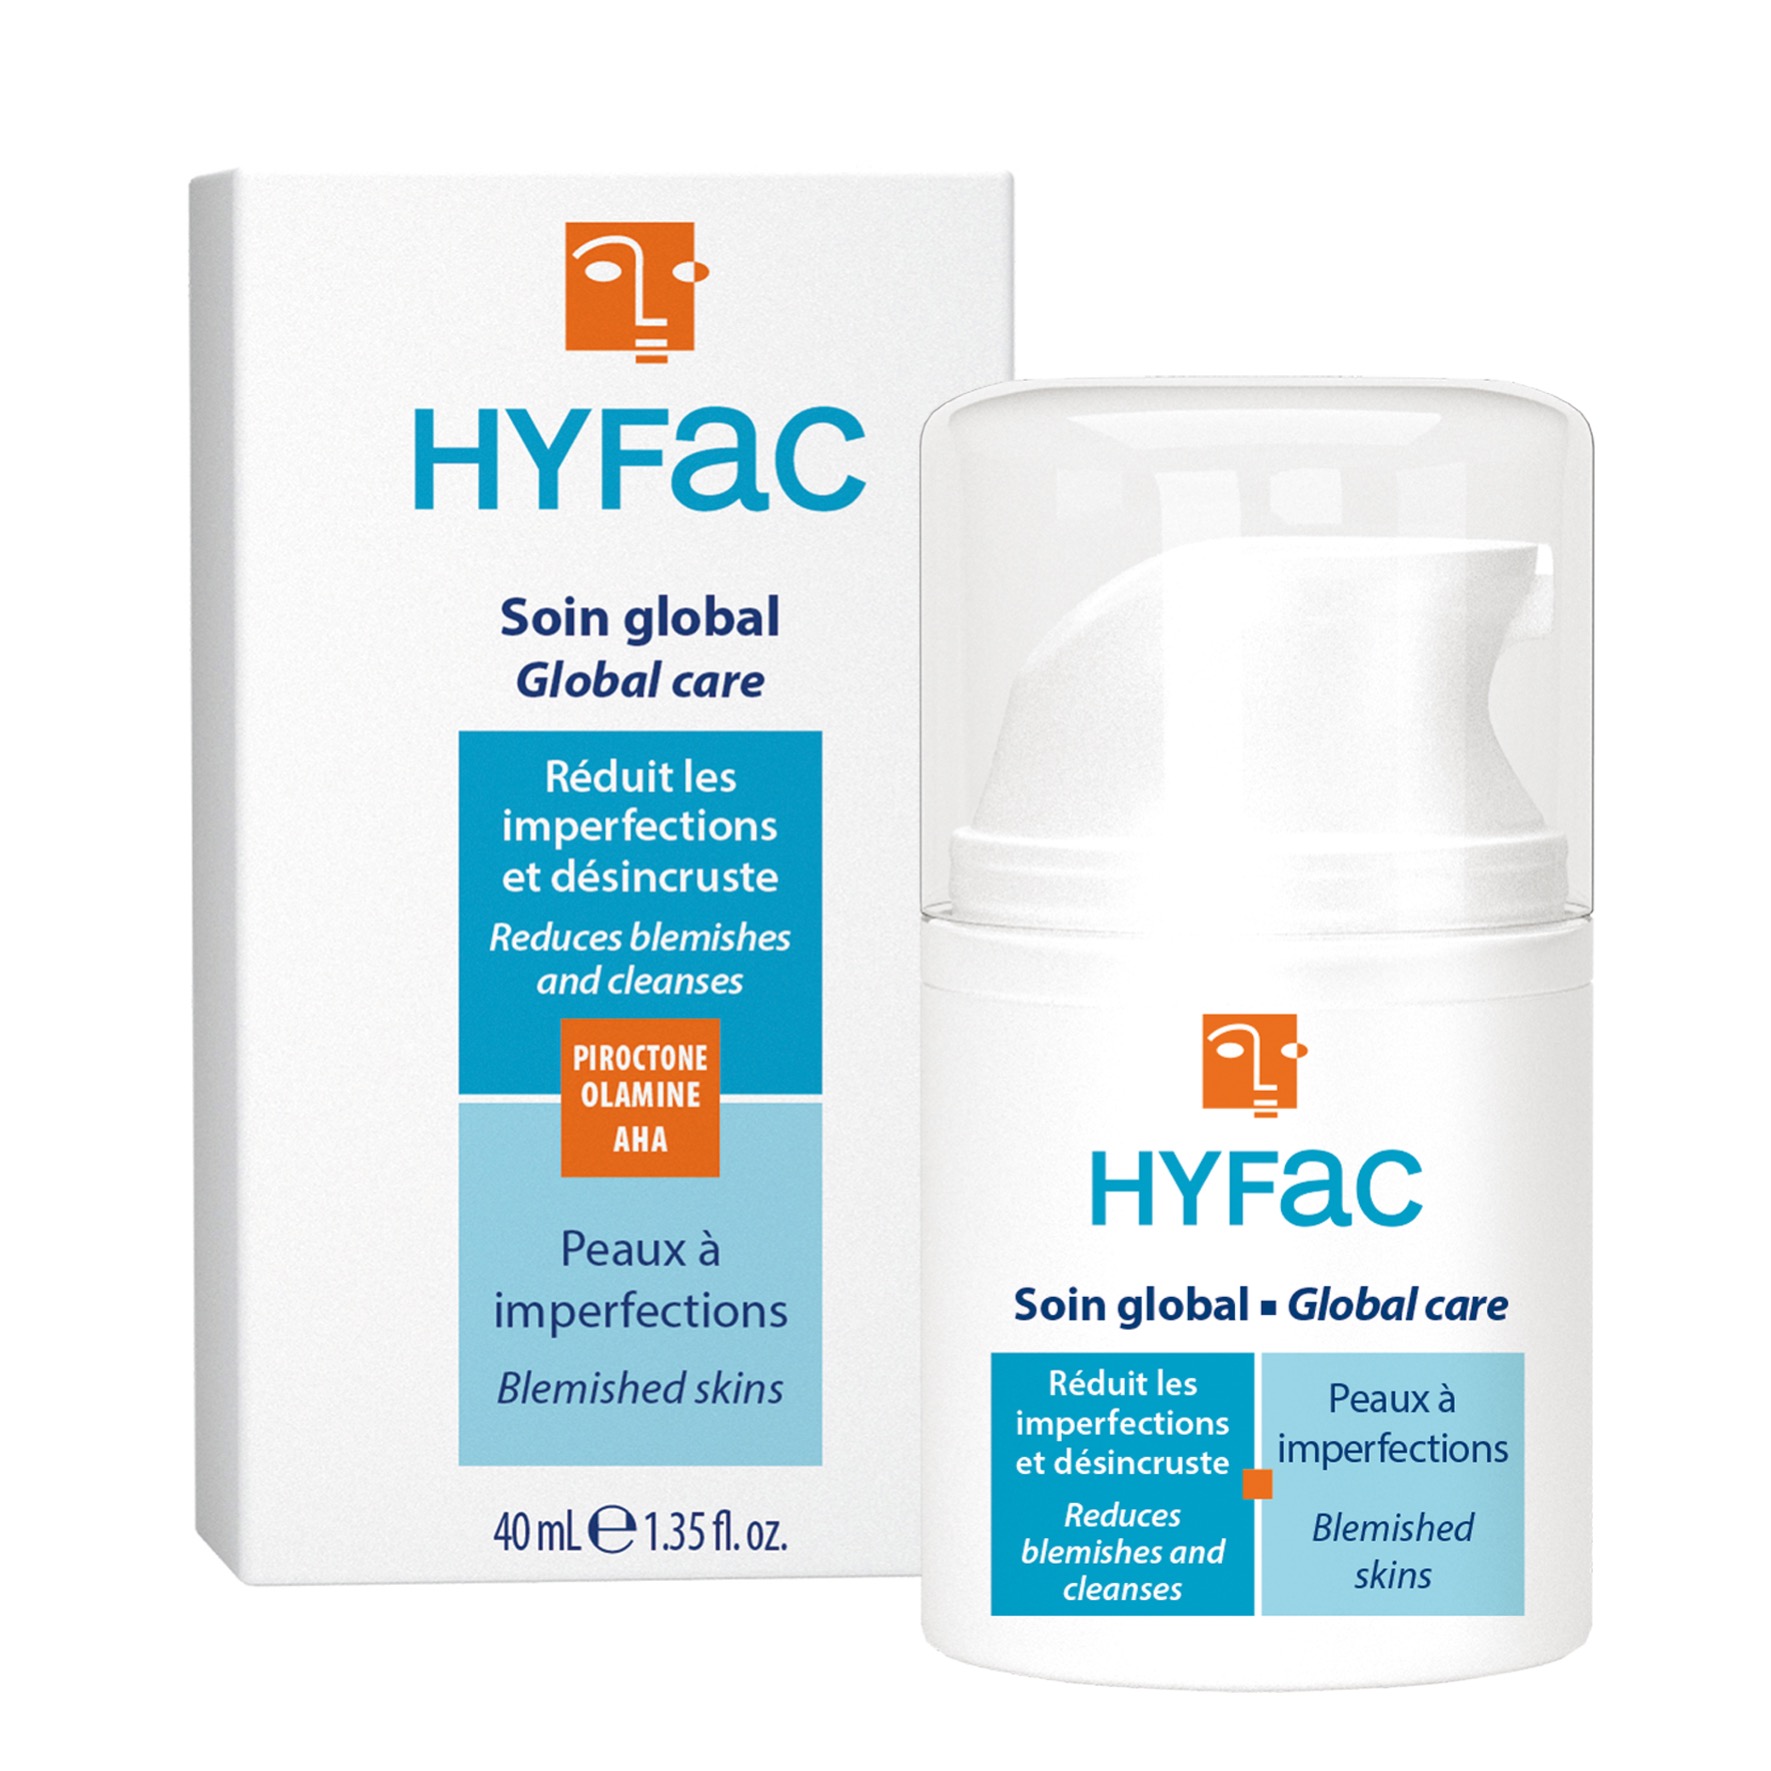 HYFAC Global Anti-Imperfection Care spendet Feuchtigkeit und reinigt